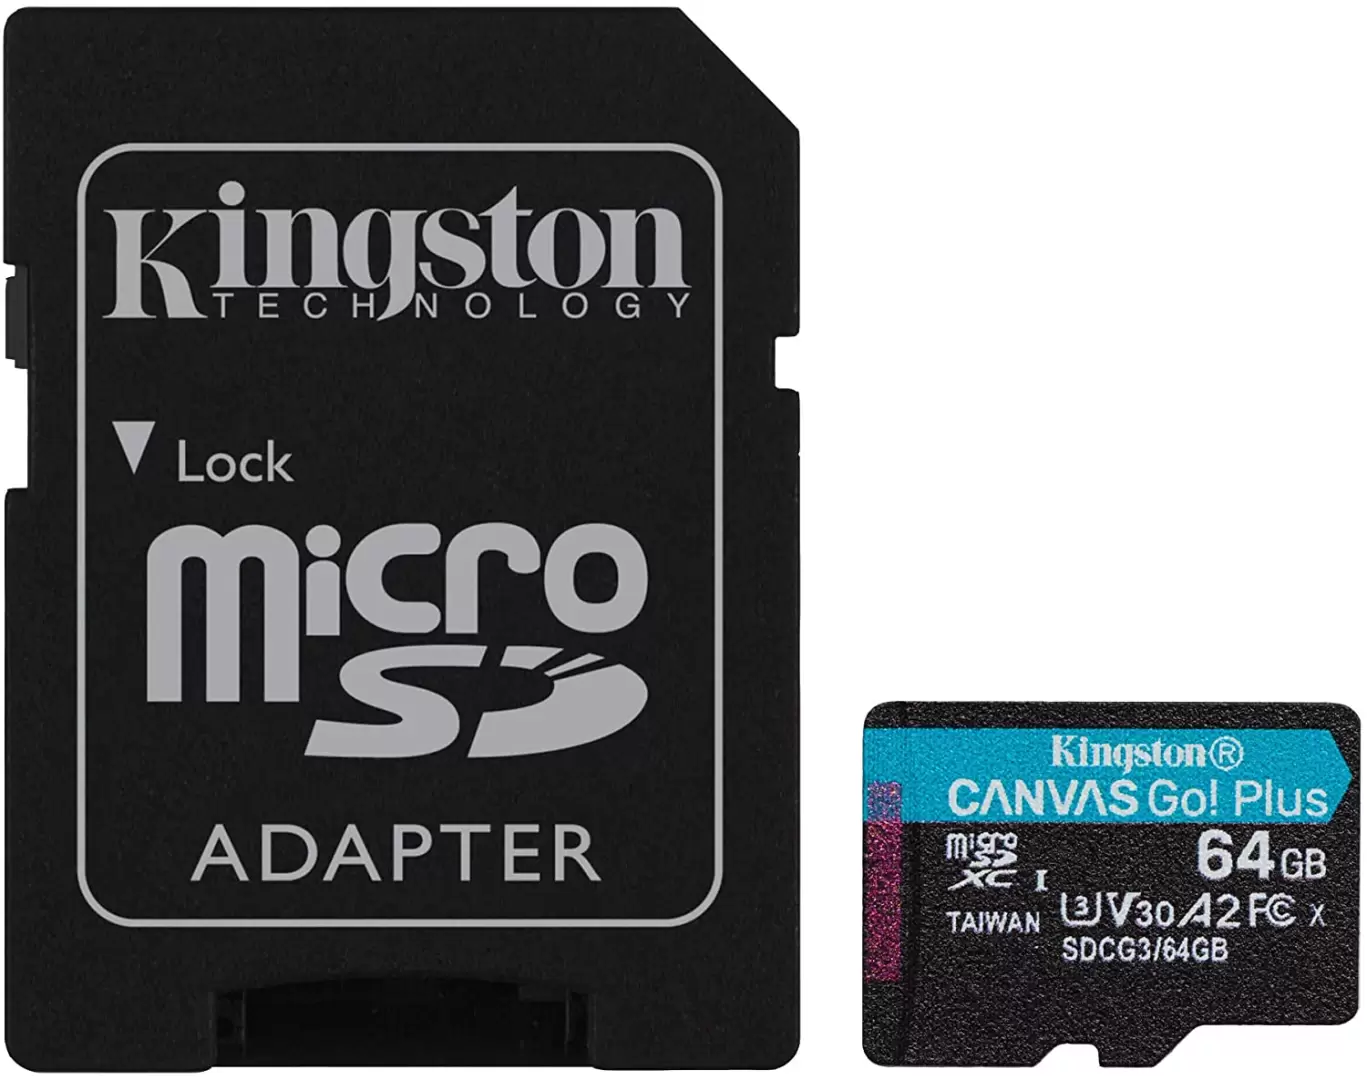 כרטיס זיכרון Kingston Micro SDXC Canvas Go Plus UHS-I נפח 64GB עם מתאם SD